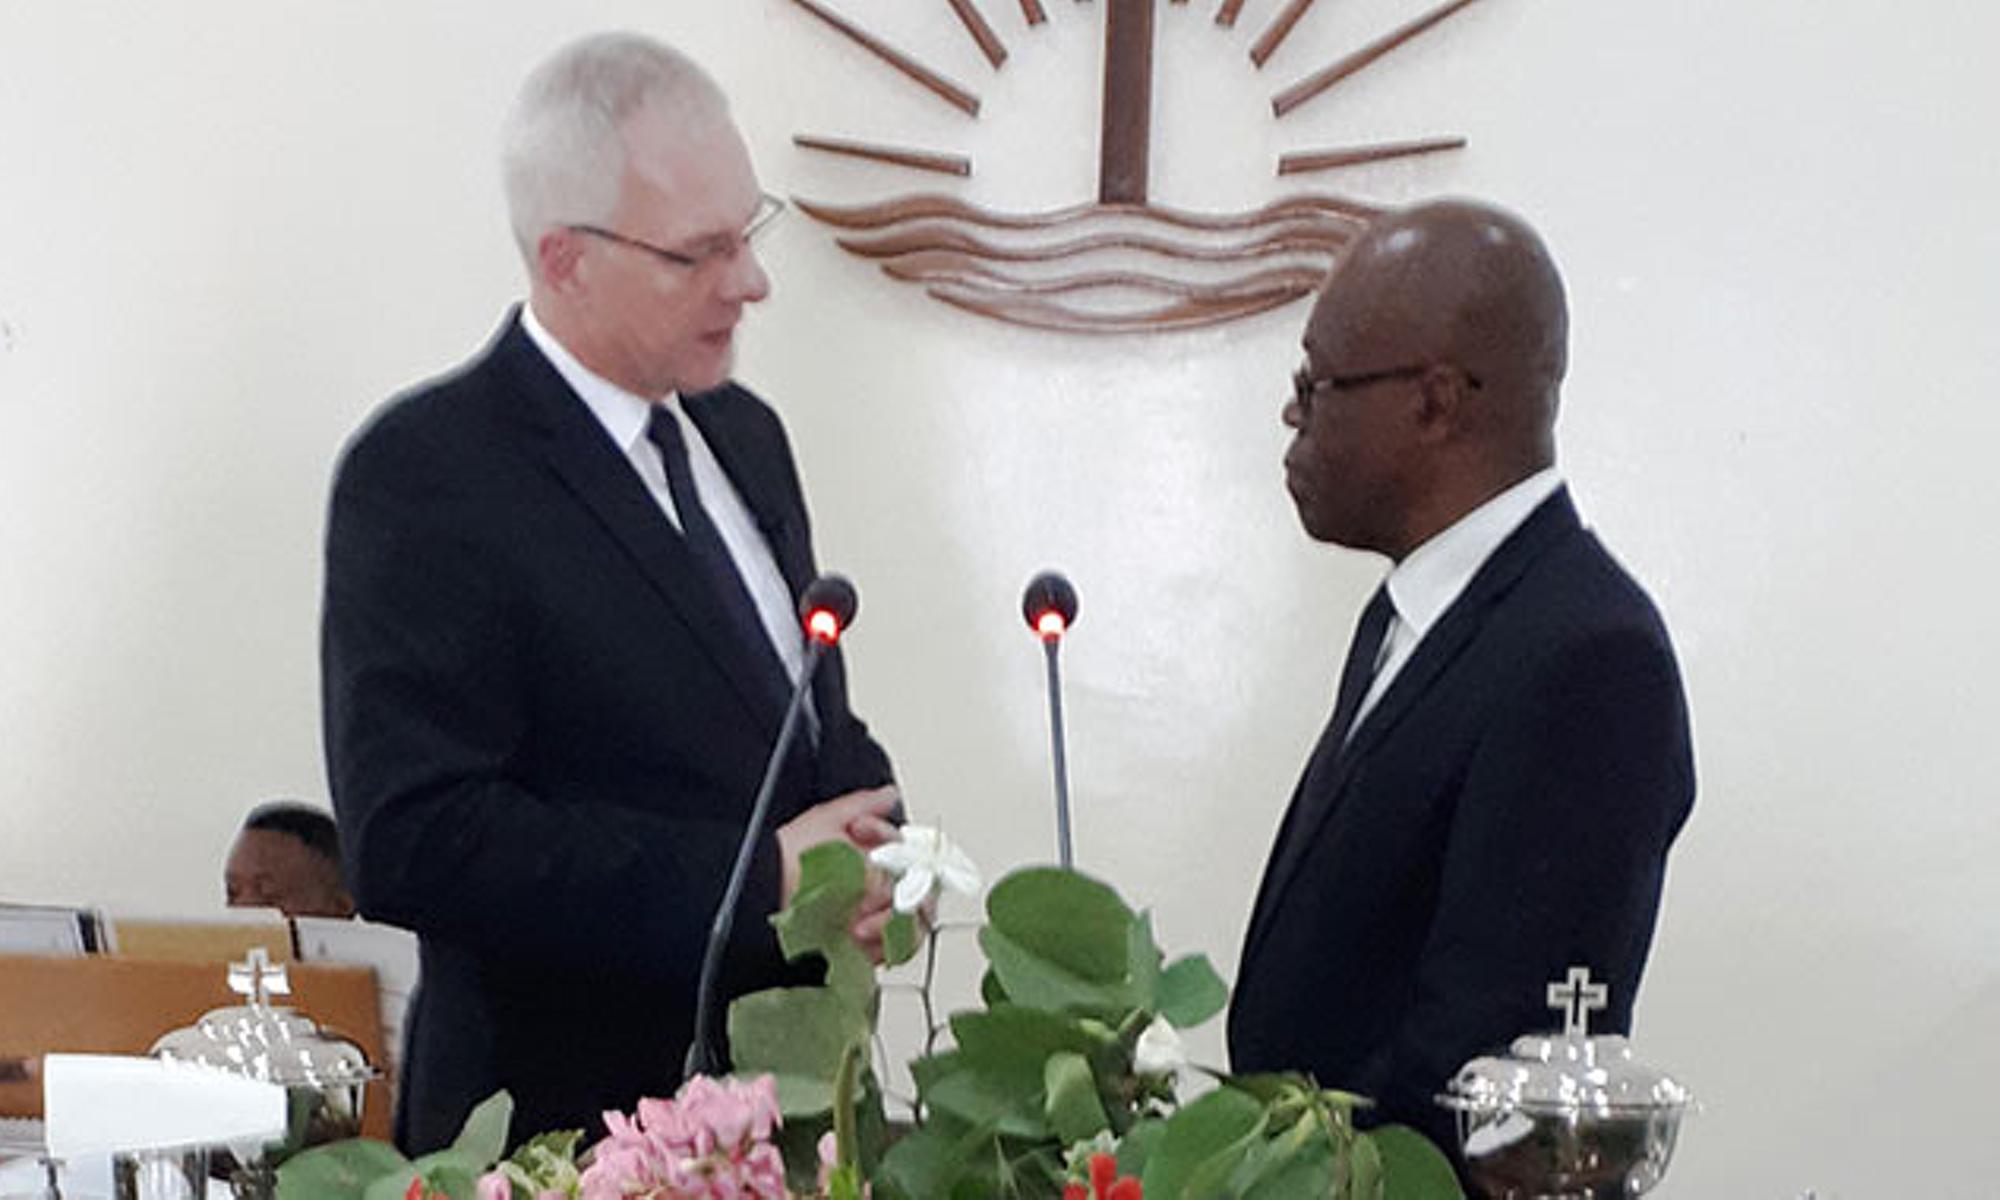 Der Bezirksapostel stellt den neuen "Lead Apostle" Geoffrey Nwogu vor